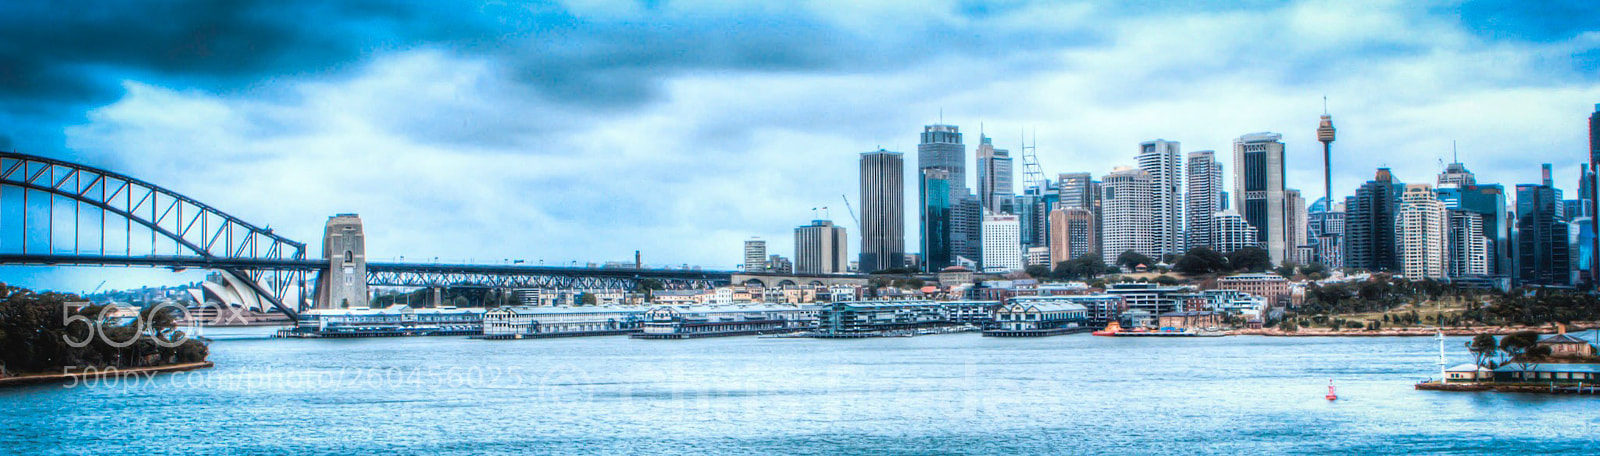 Canon EOS 60D sample photo. Sydney city skyline hdr photography